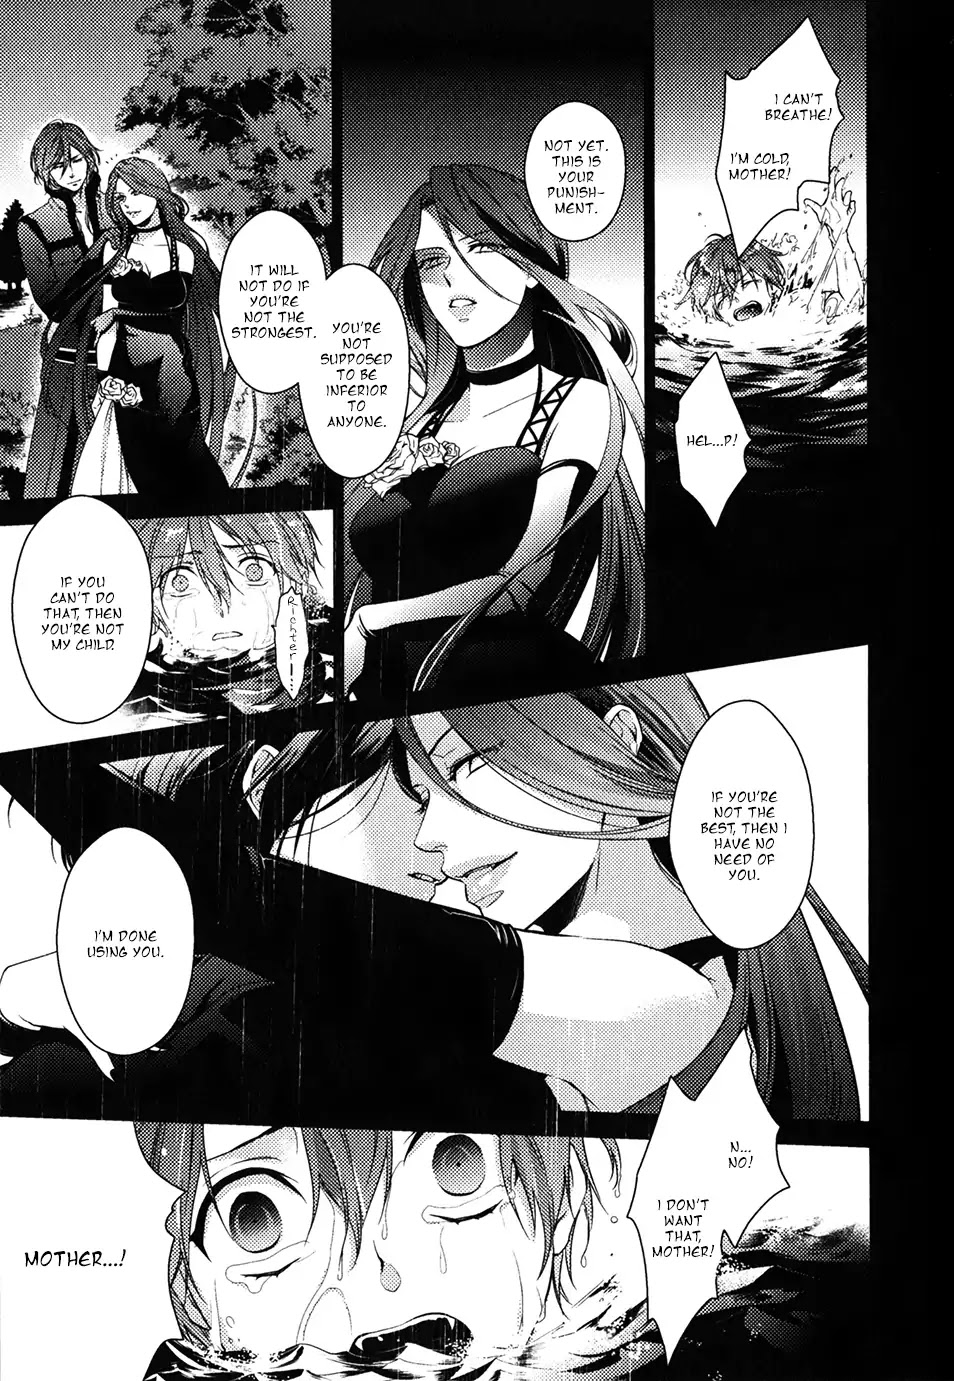 Diabolik Lovers: Sequel - Ayato, Laito, Subaru Arc - Page 3